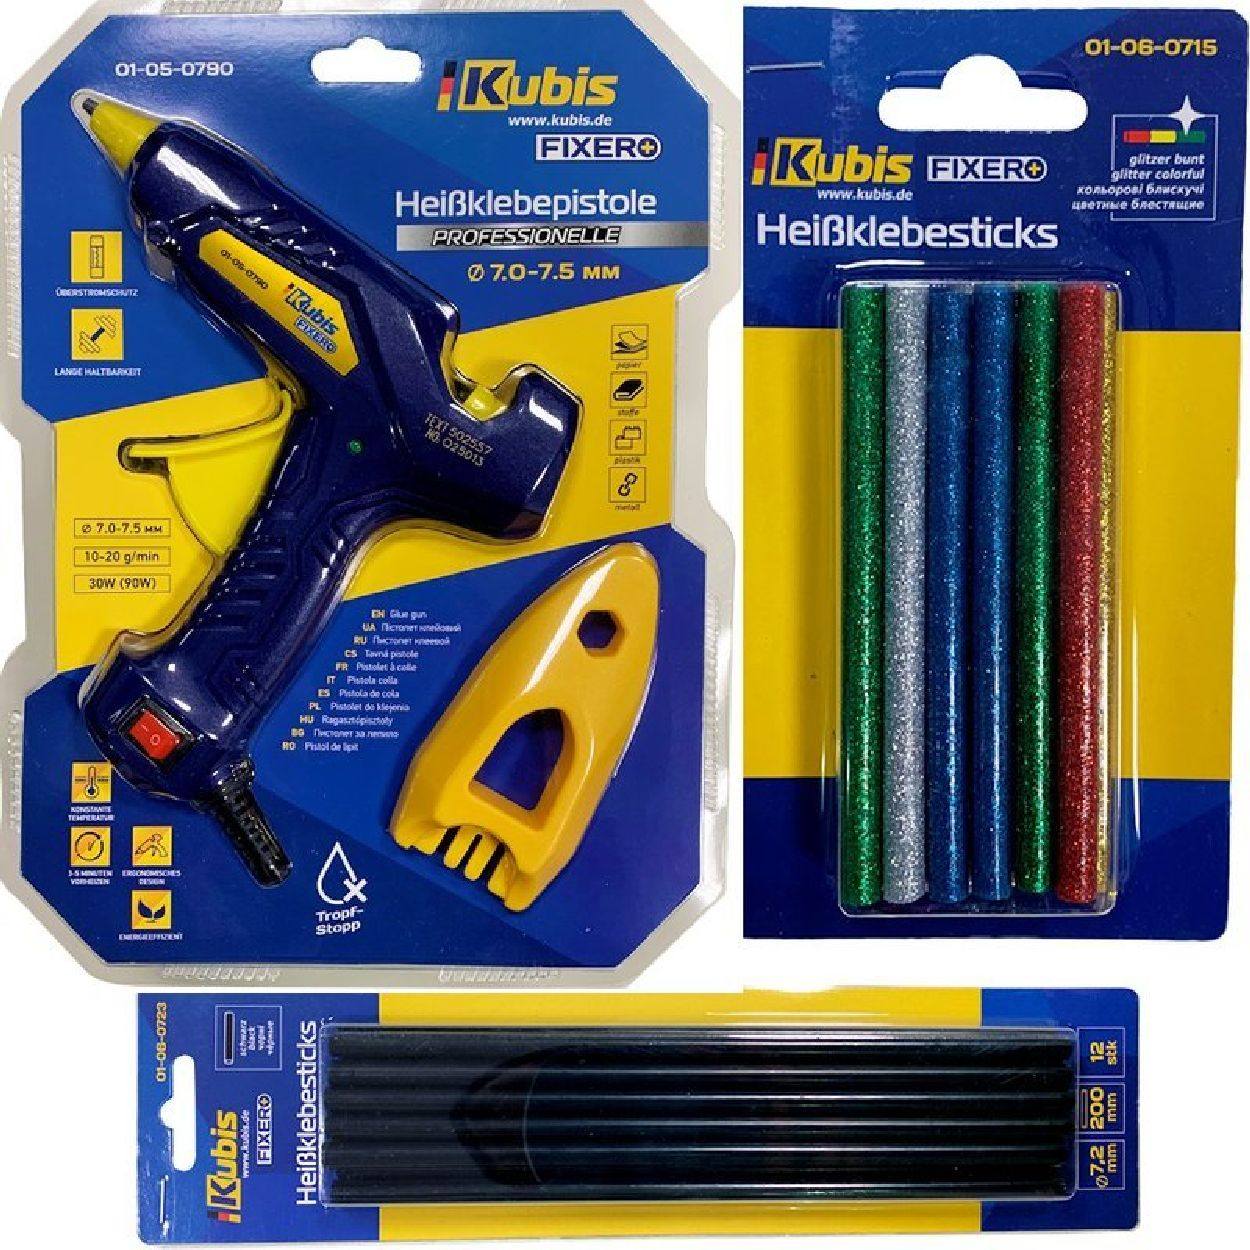 INBUSCO / KUBIS KlebepistoleSET KB01-05-0790 Multifunktionswerkzeug, -V2-Set 2x-gelb,blau,gruen,rot,braun